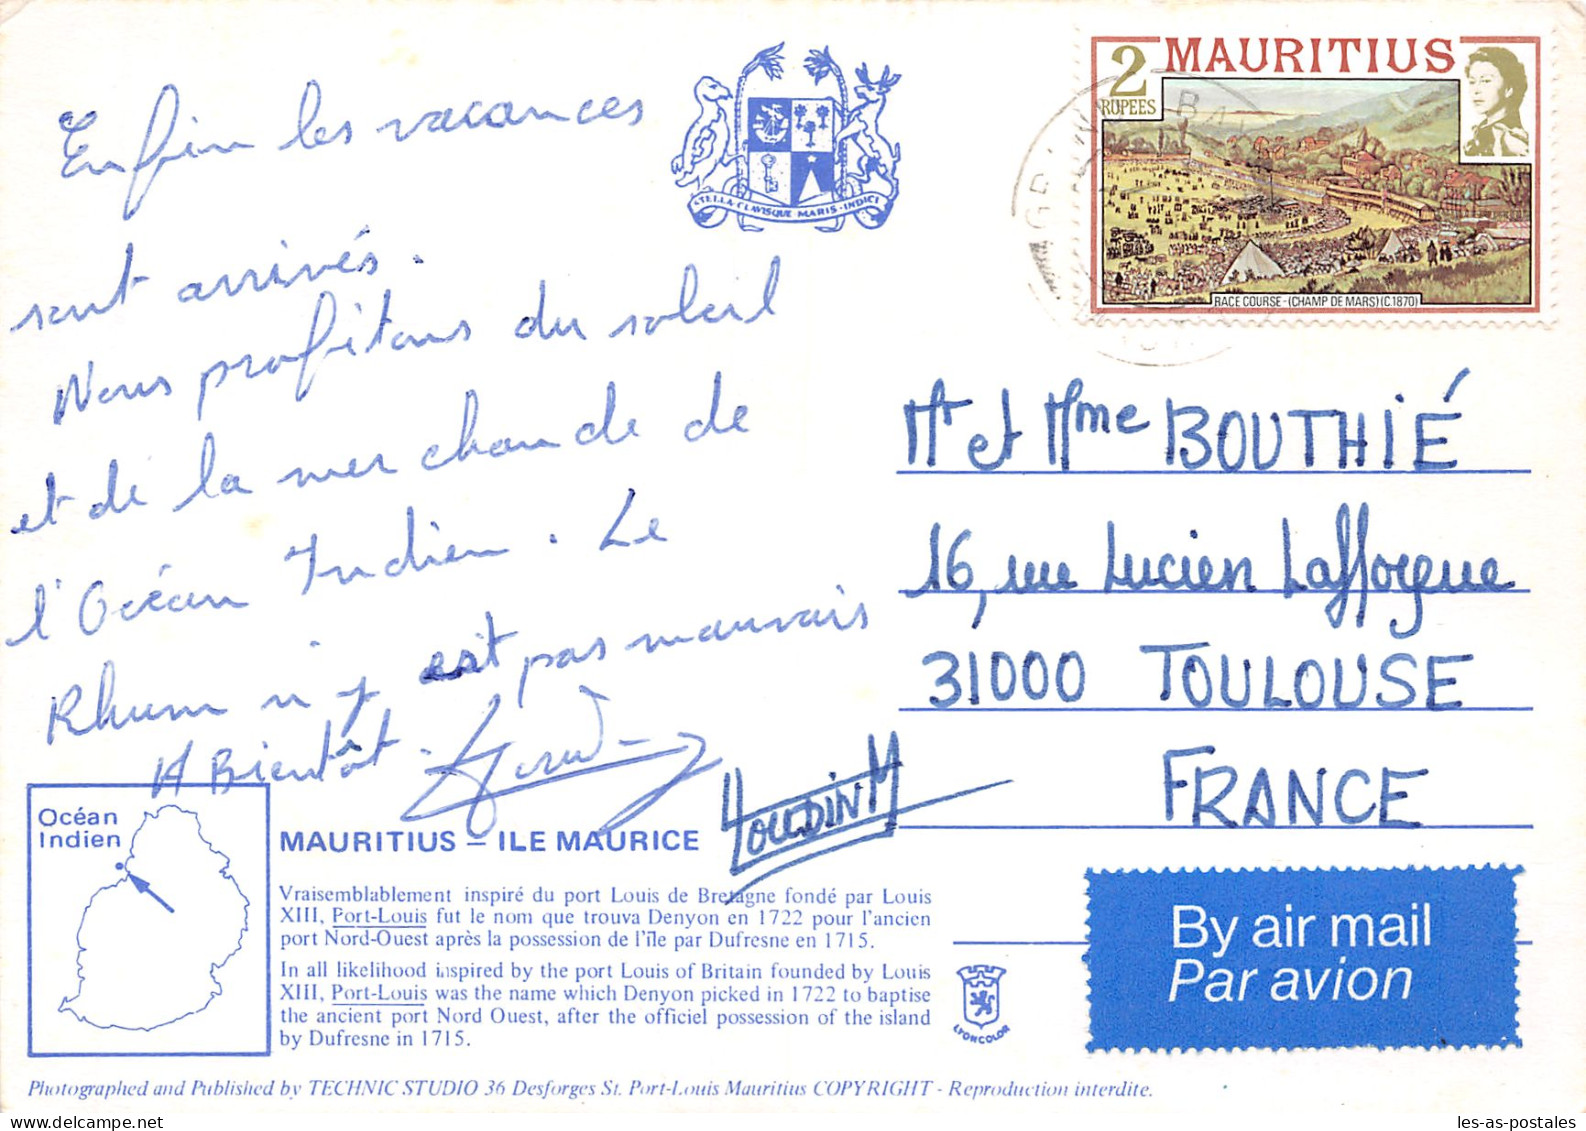 MAURITIUS L ILE MAURICE - Mauritius